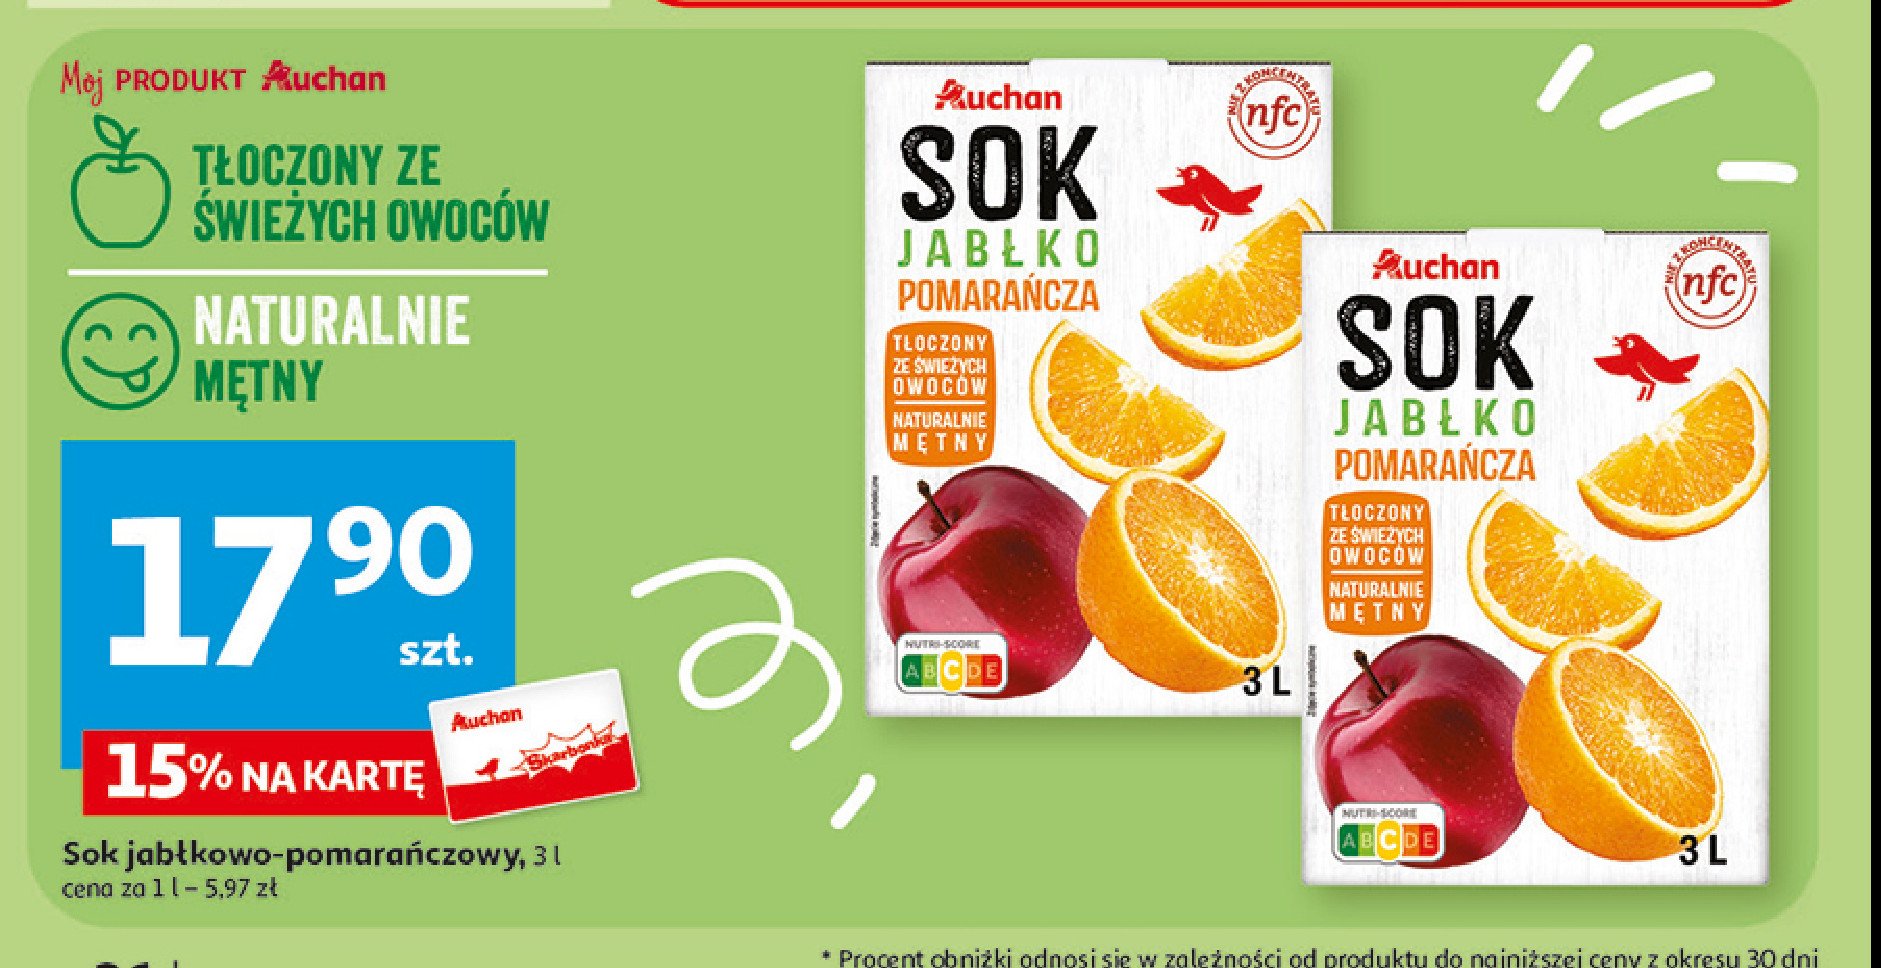 Sok jabłko-pomarańcza Auchan różnorodne (logo czerwone) promocja